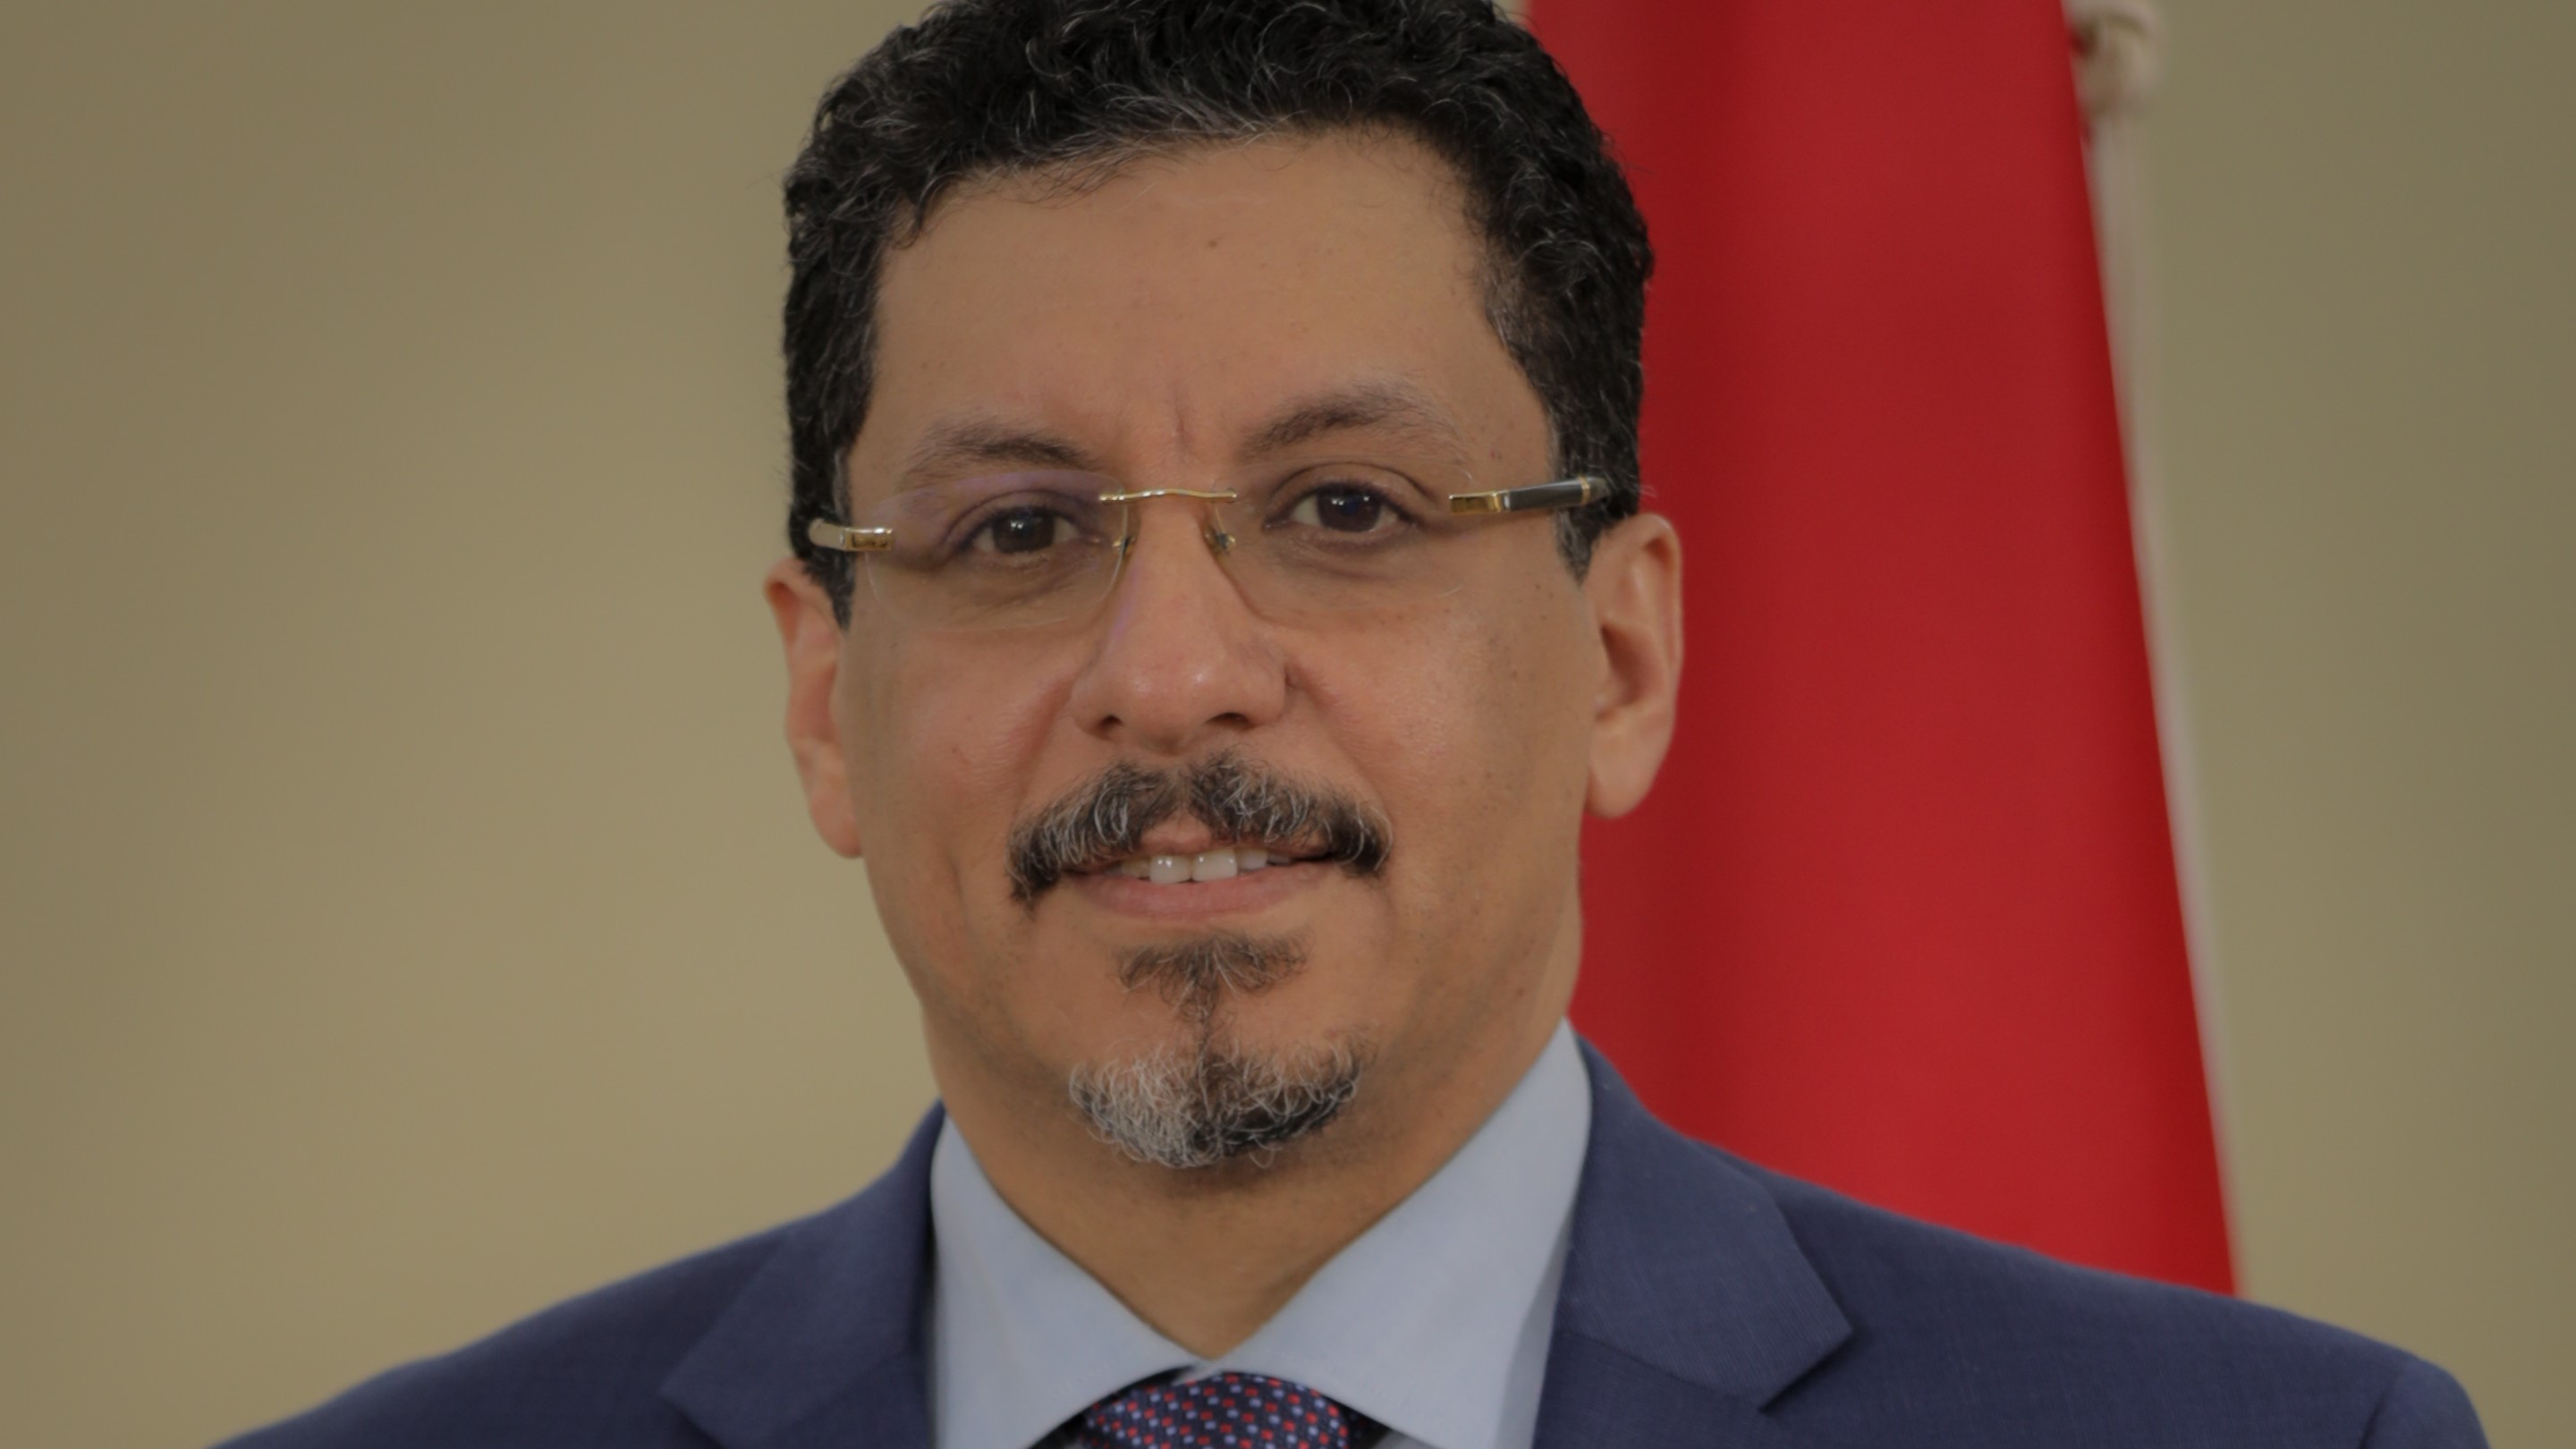 السعودية نيوز |  وزير خارجية اليمن لـ "إيلاف": النقاش مستمر لاستكمال تنفيذ اتفاق الرياض 